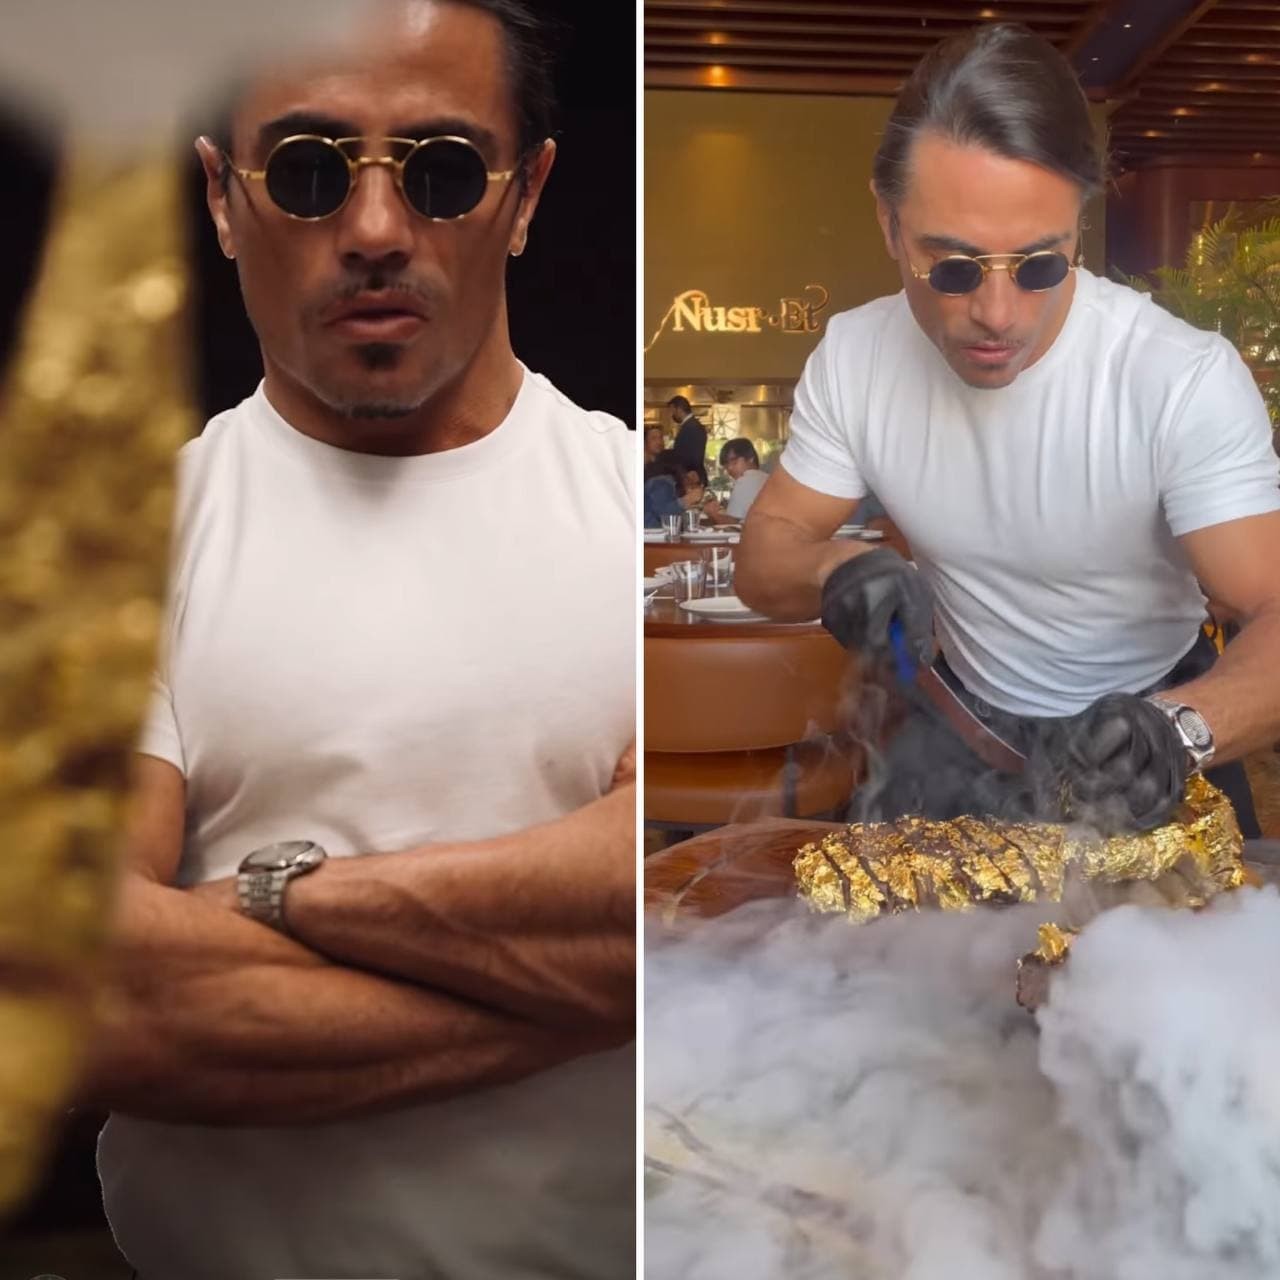 Chef Salt Bae oferece bife coberto de ouro por R$9 mil em restaurante (Foto: Reprodução / Instagram)